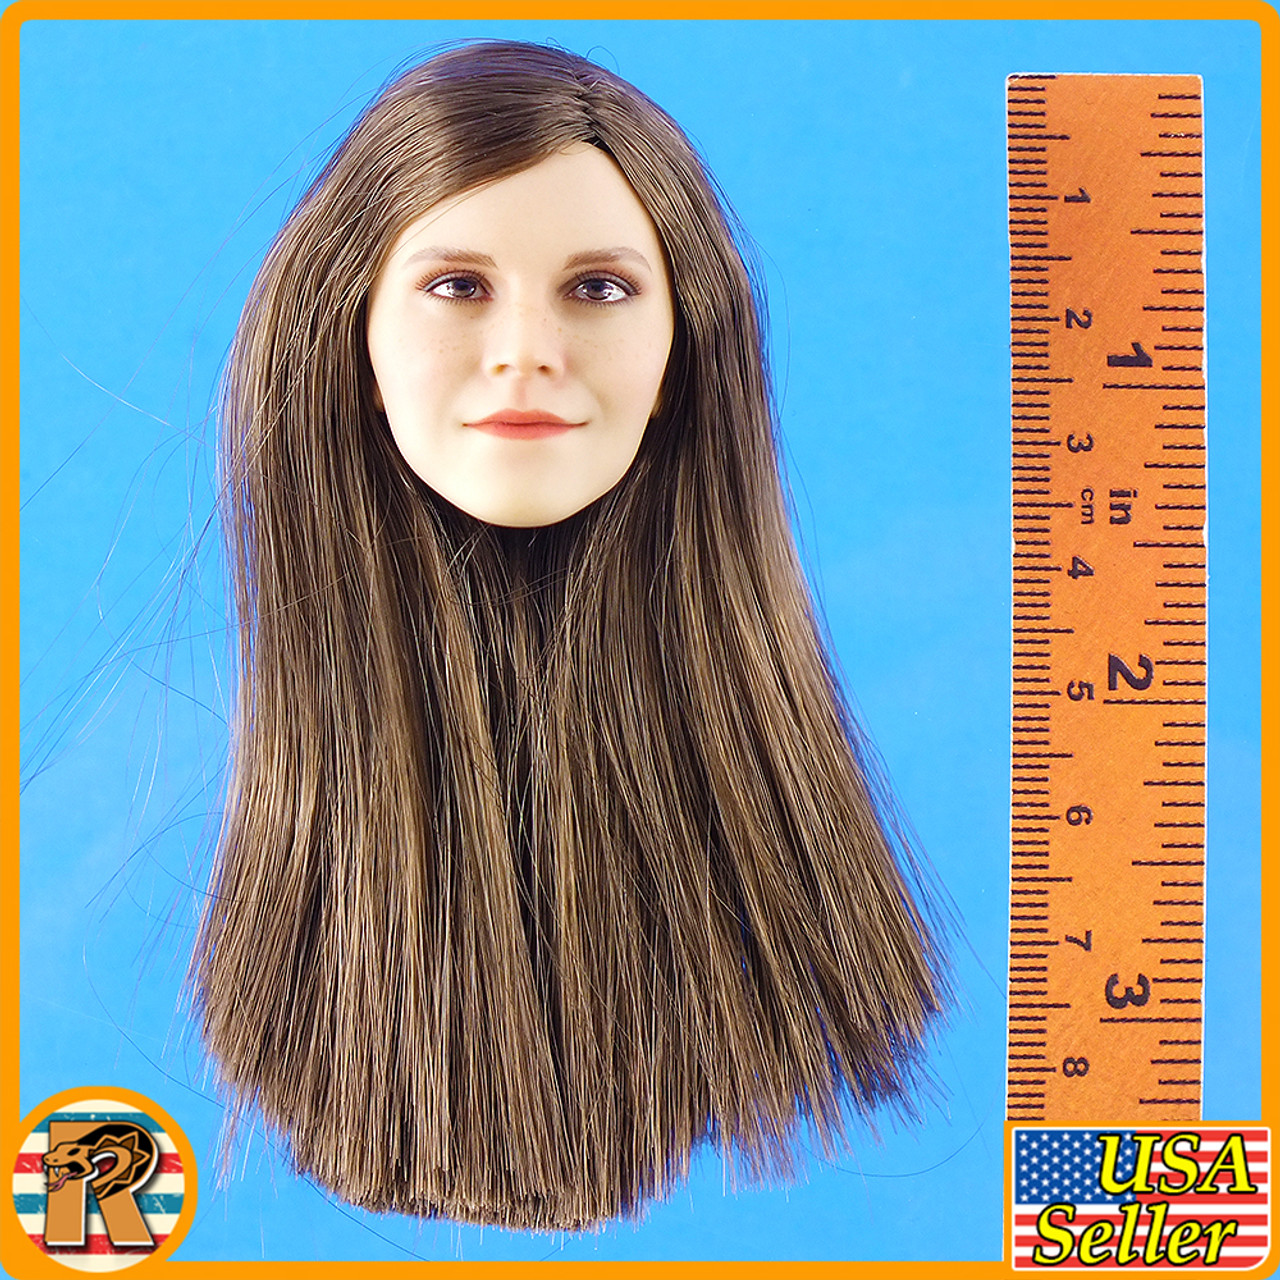 Emma Headsculpt - B Brown Straight Hair #2 - 1/6 Scale -